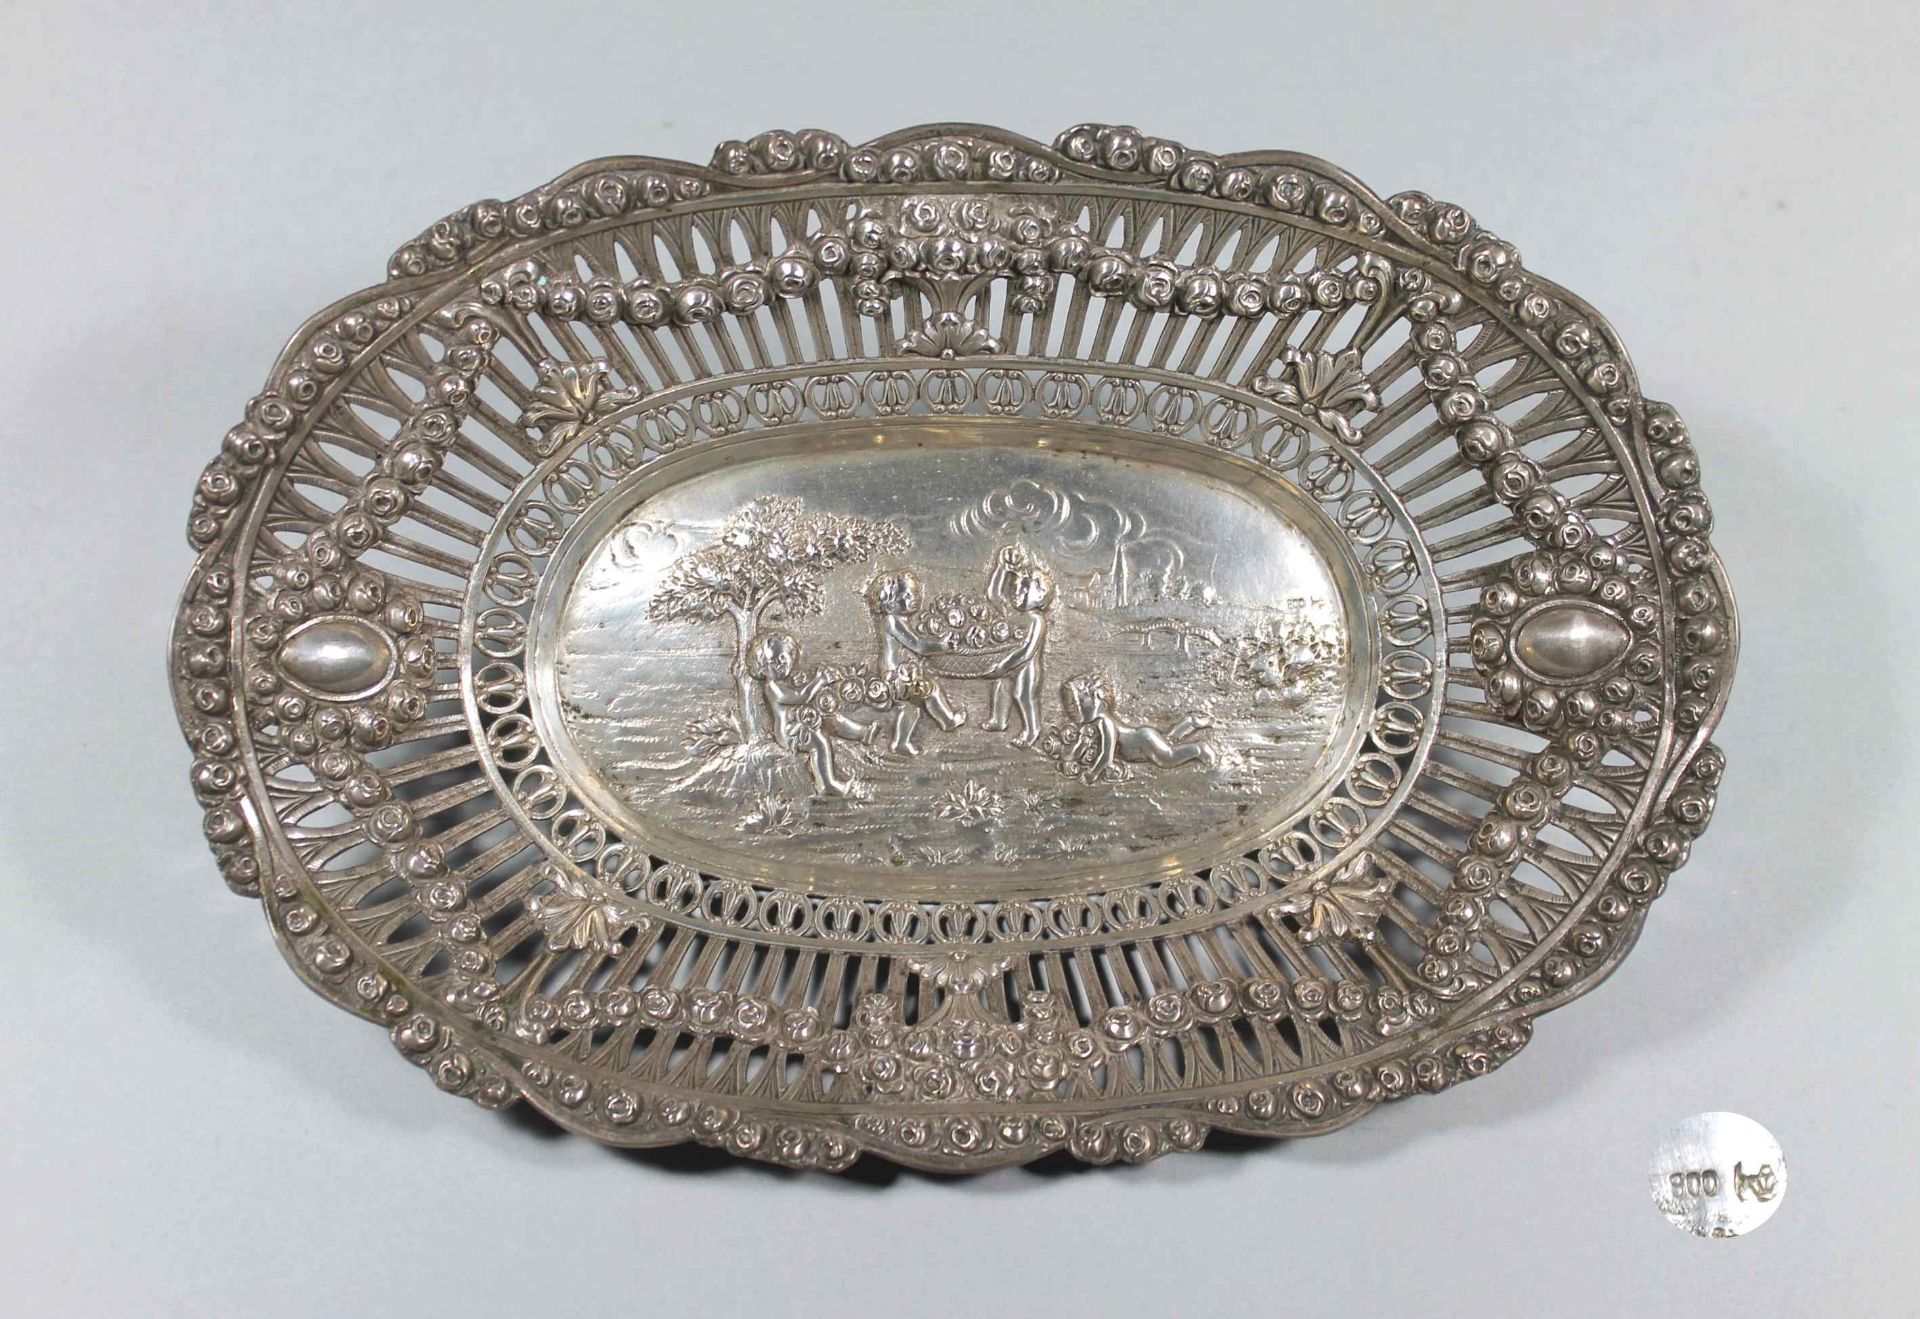 1 ovale Schale Silber (800/000), deutsch, Punze: Halbmond und Krone vertiefte Form, Spiegel mit